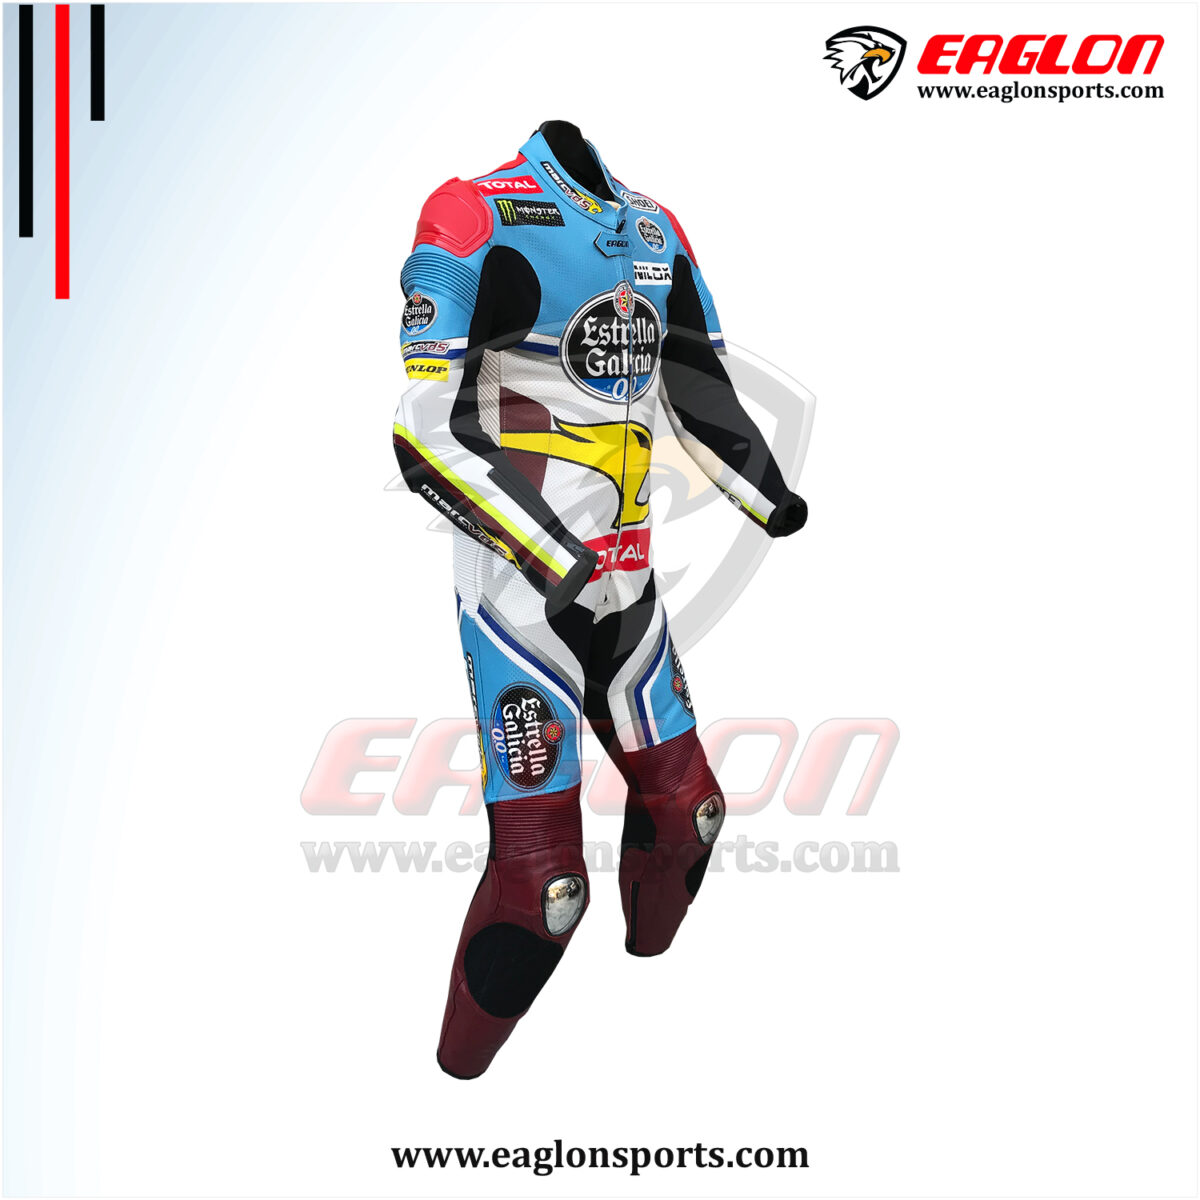 Alex-Marquez-Estrella-Garcia-MarcVDS-Leather-Race-Suit